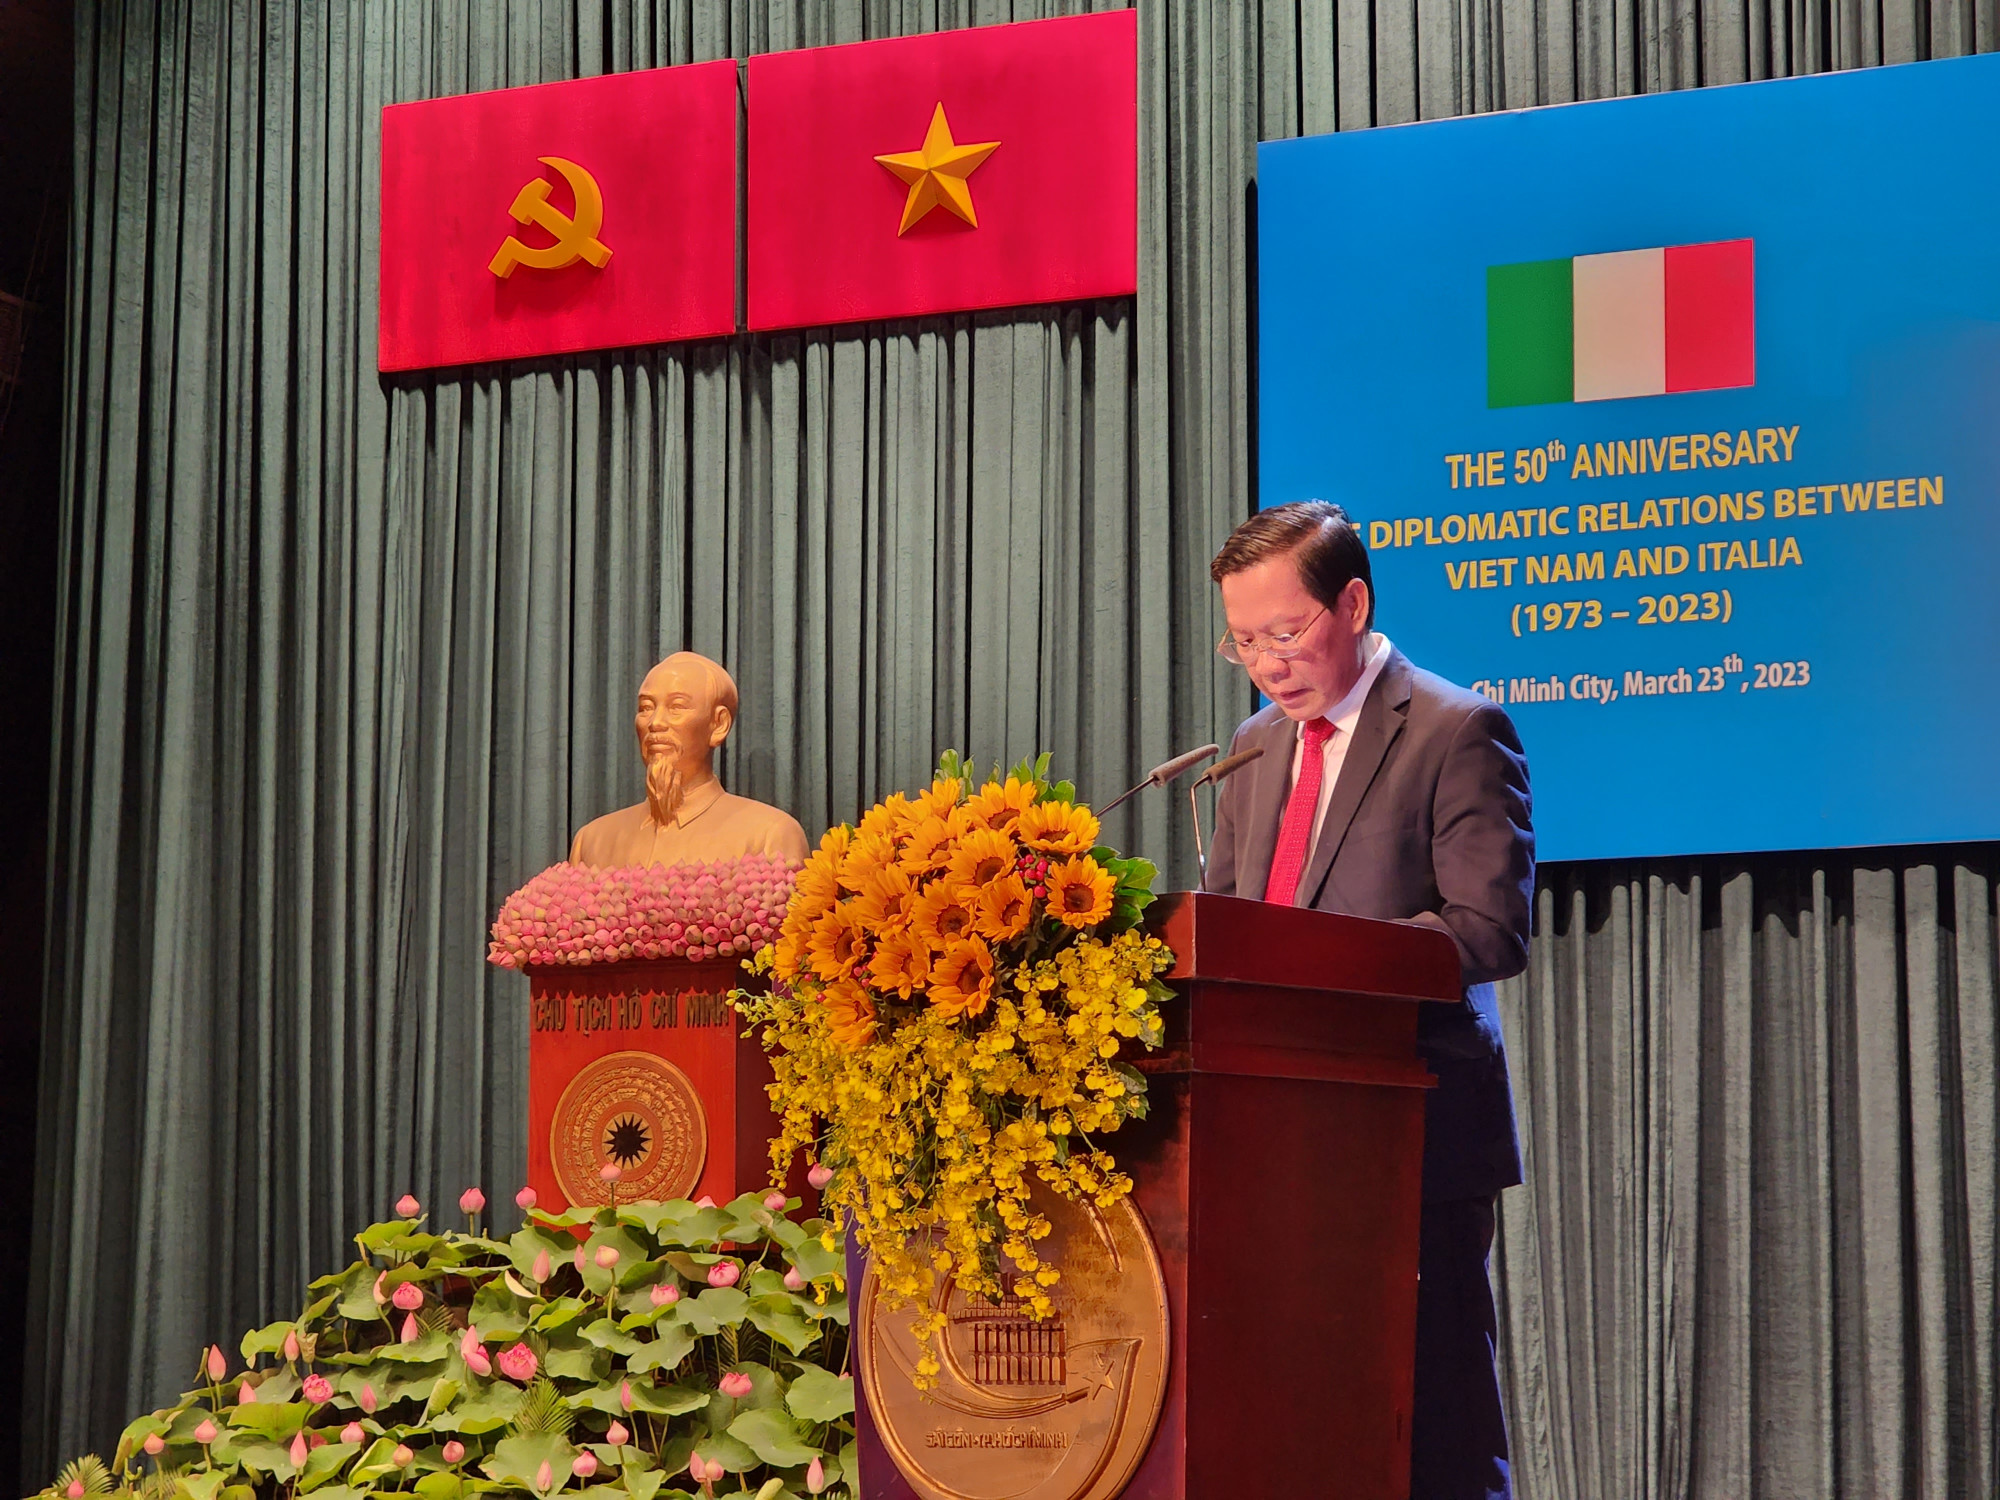 Chủ tịch UBND TP HCM Phan Văn Mãi cảm ơn những hỗ trợ, sẻ chia của nhân dân Italia trong 50 năm qua, đặc biệt là vào giai đoạn đại dịch COVID-19